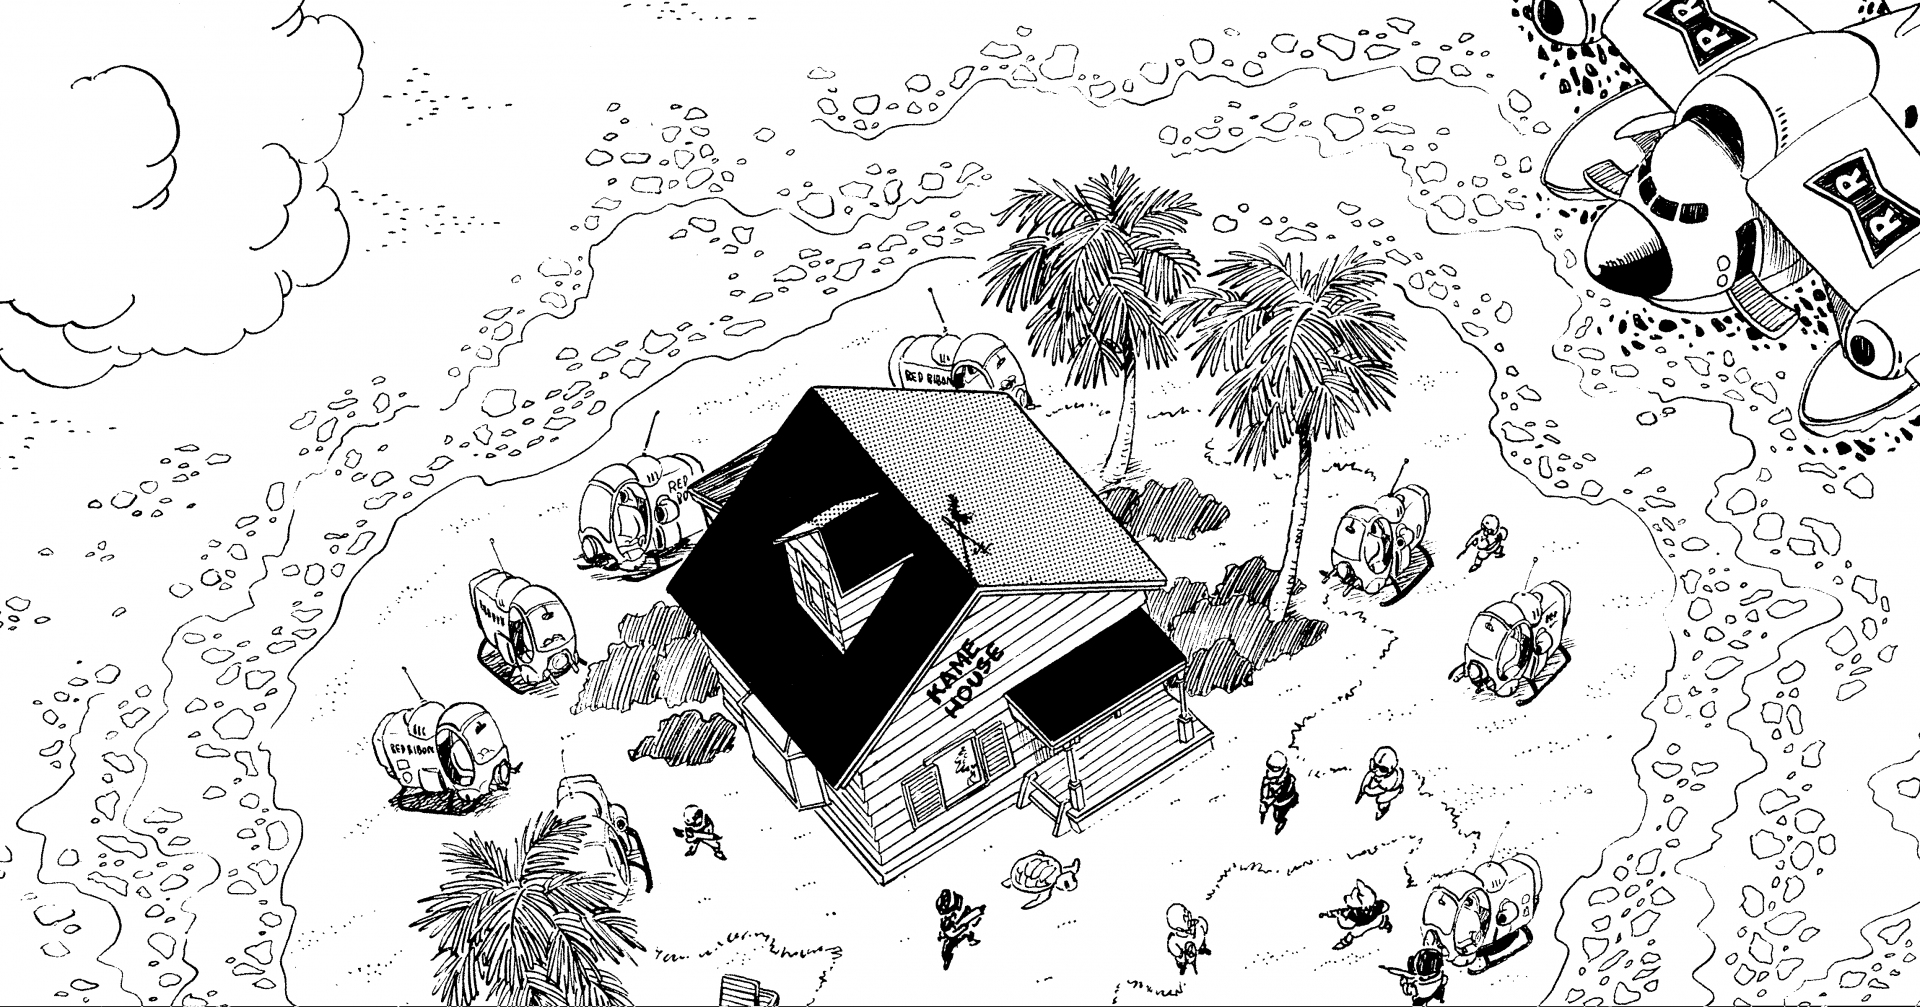 〜 Investigación en profundidad sobre el manga de Dragon Ball: archivo n.º 018〜 Cuaderno de viaje por el mundo: Área de Kame House